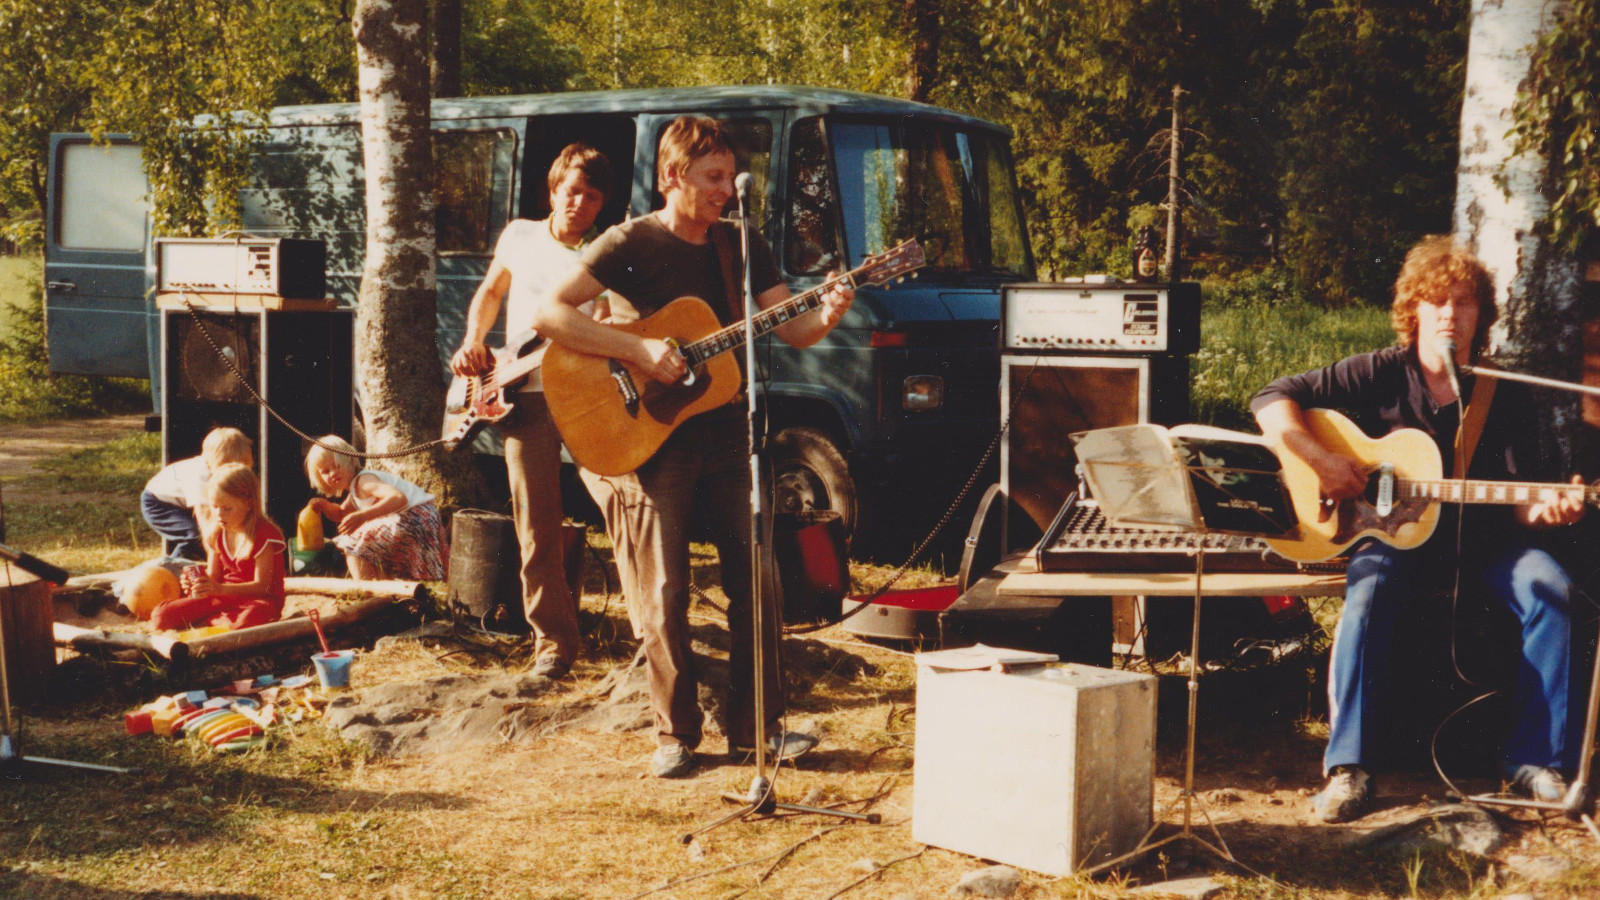 Kuvassa ovat bändin neljä jäsentä harjoittelemassa kesäisessä ympäristössä koivujen alla.  Heistä näkyy kolme ja heillä on kitarat  ja he soittavat. Vasemmalla on lapsia leikkimässä hiekkalaatikolla.